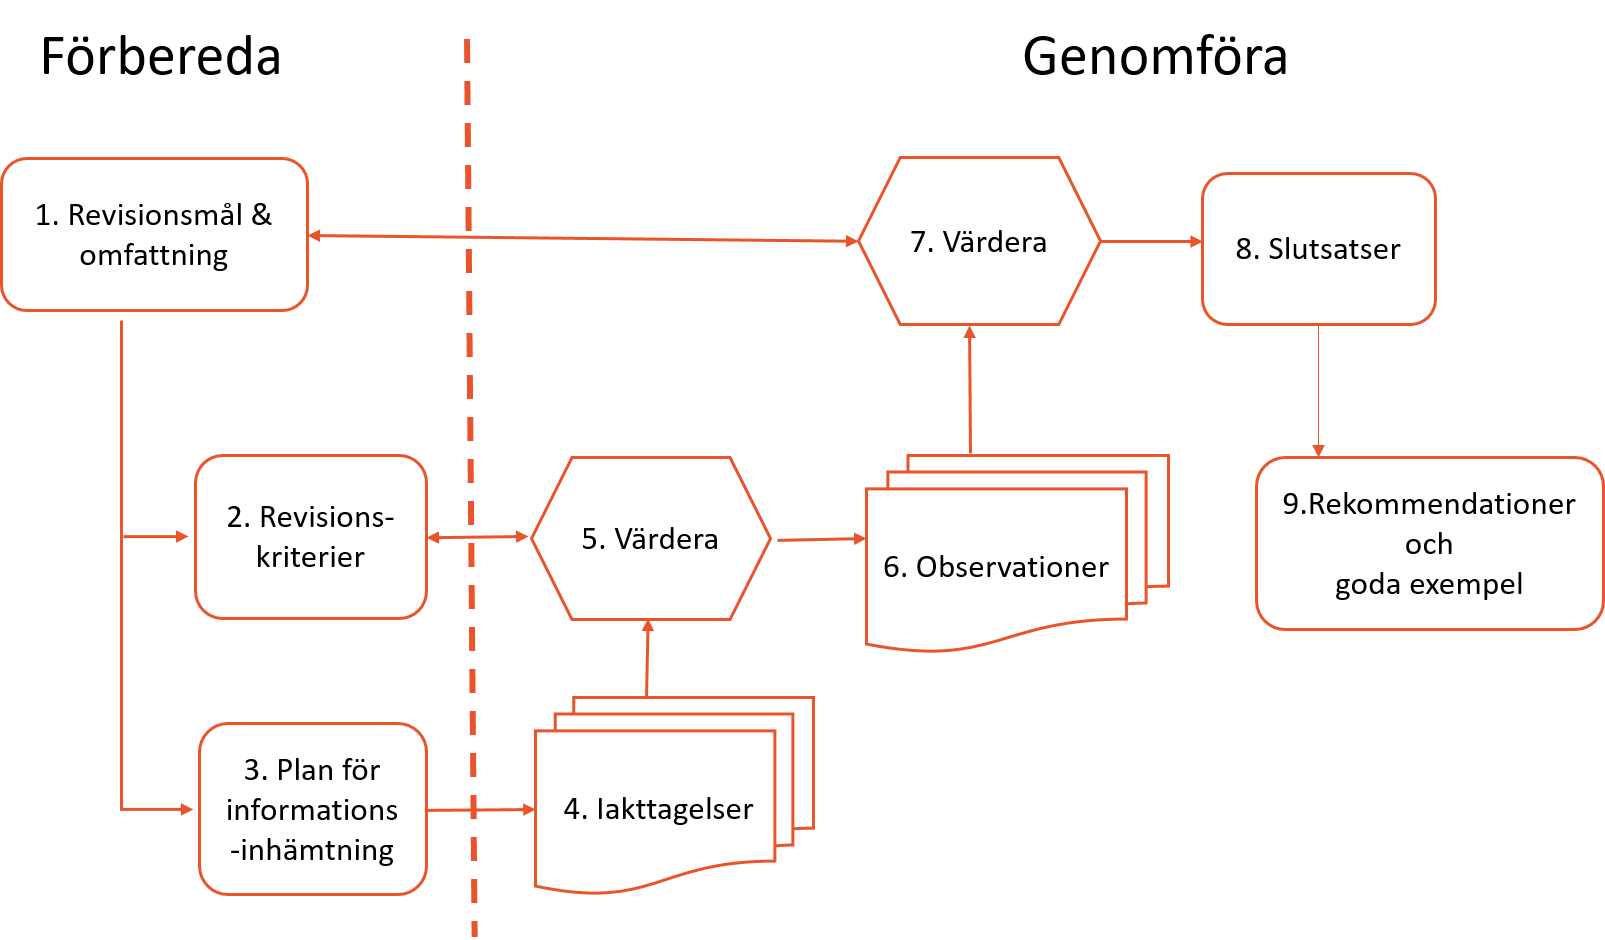 Bilden beskriver schematiskt en revision i nio steg från dess mål till att rekommendationer och goda exempel formuleras